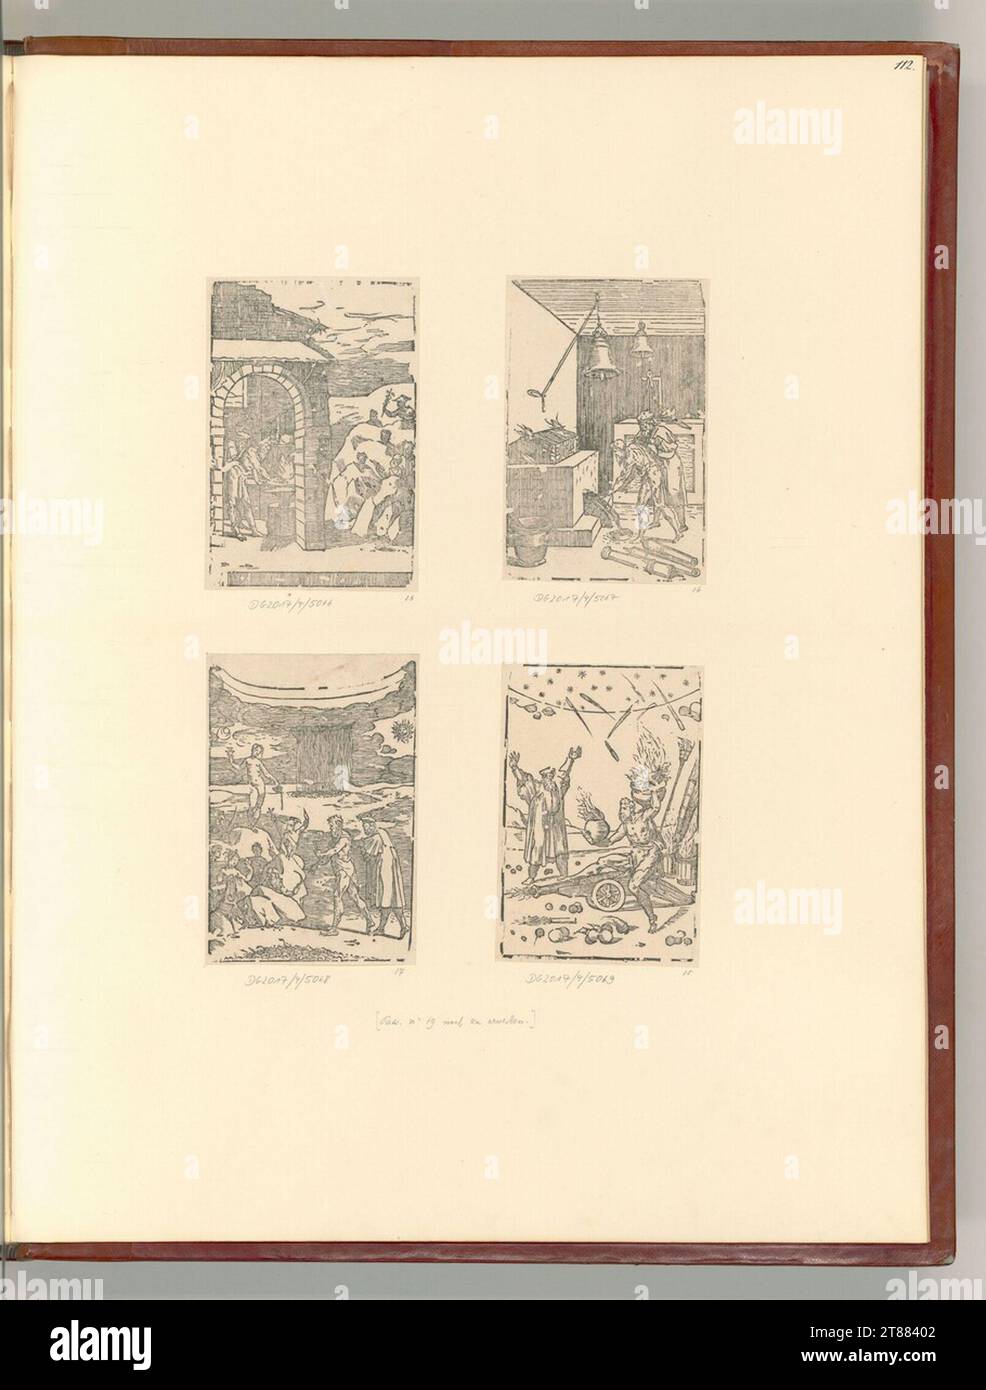 Domenico Beccafumi gen. Scènes de Mecarino d'un atelier d'un alchimiste avec des figures mythologiques. Gravure sur bois 1500-1550, 1500/1550 Banque D'Images